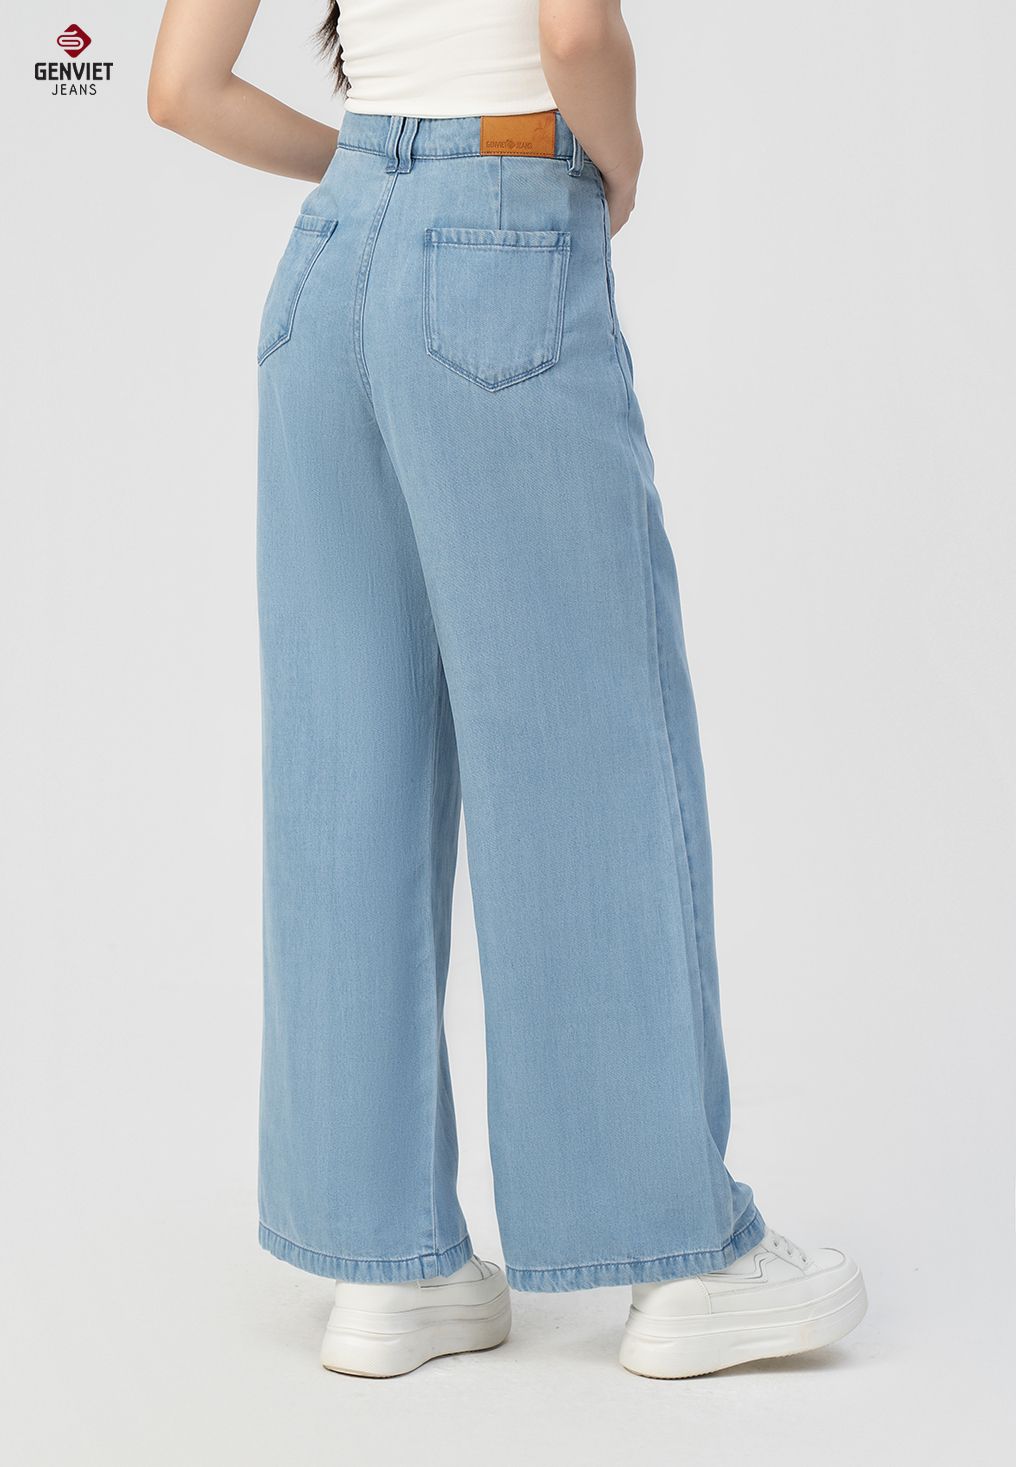  Quần Dài Nữ Jeans Tencel Siêu Nhẹ Dáng Suông Trẻ Trung TQ124J8531 